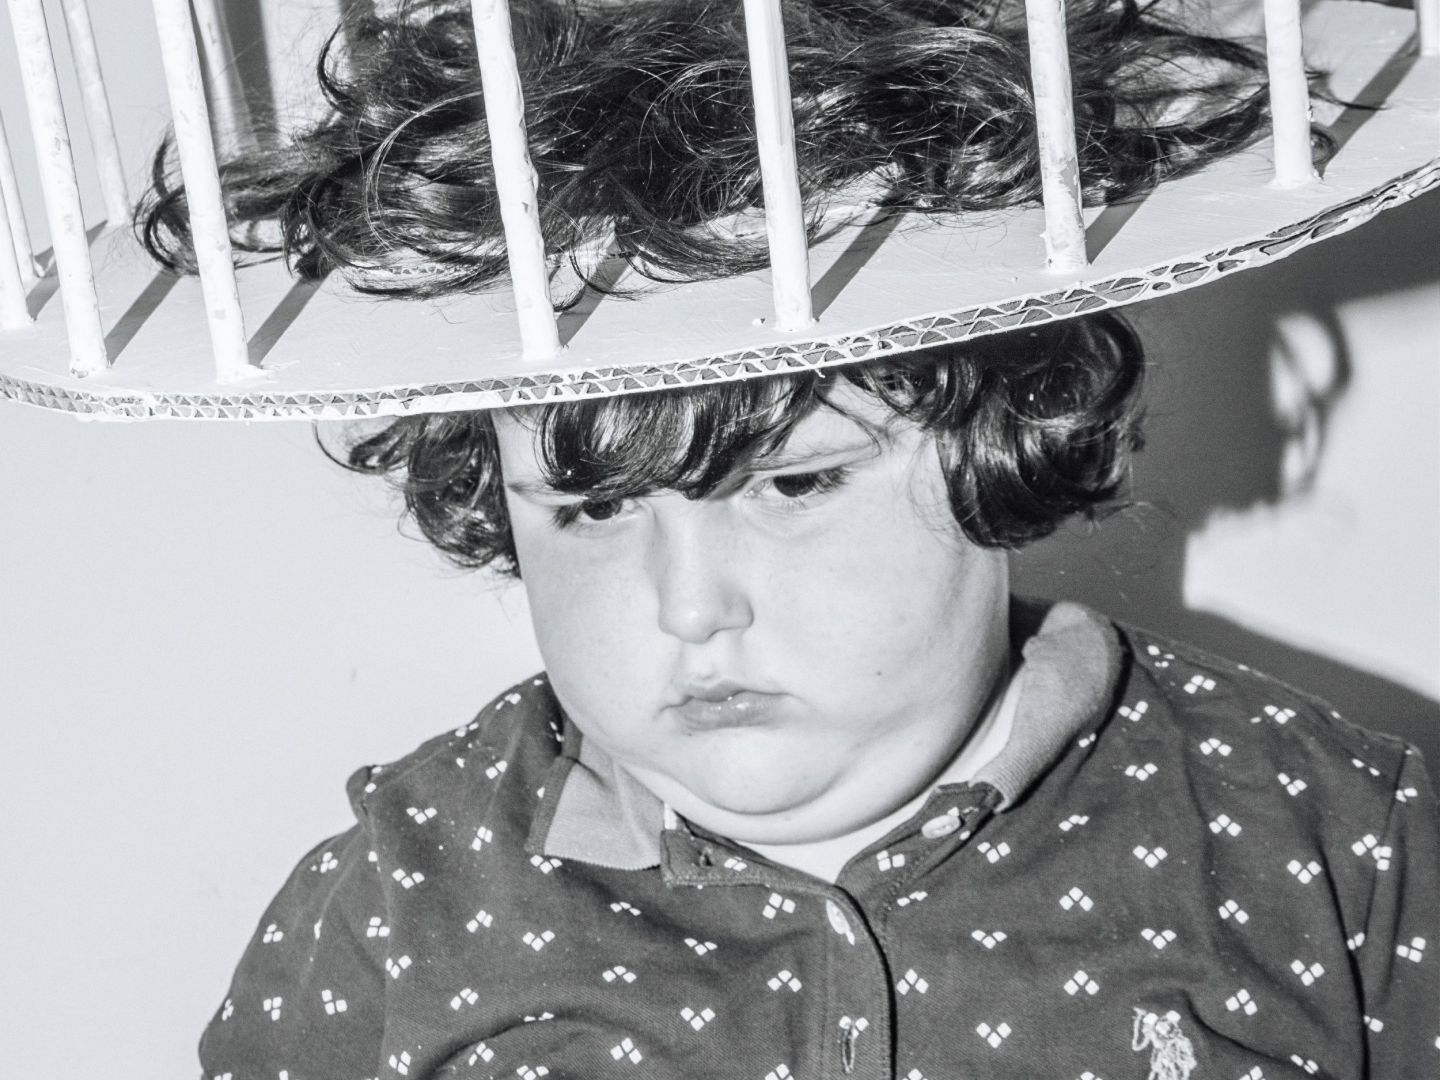 Das Bild zeigt ein Kind mit einem runden Käfig auf dem Kopf